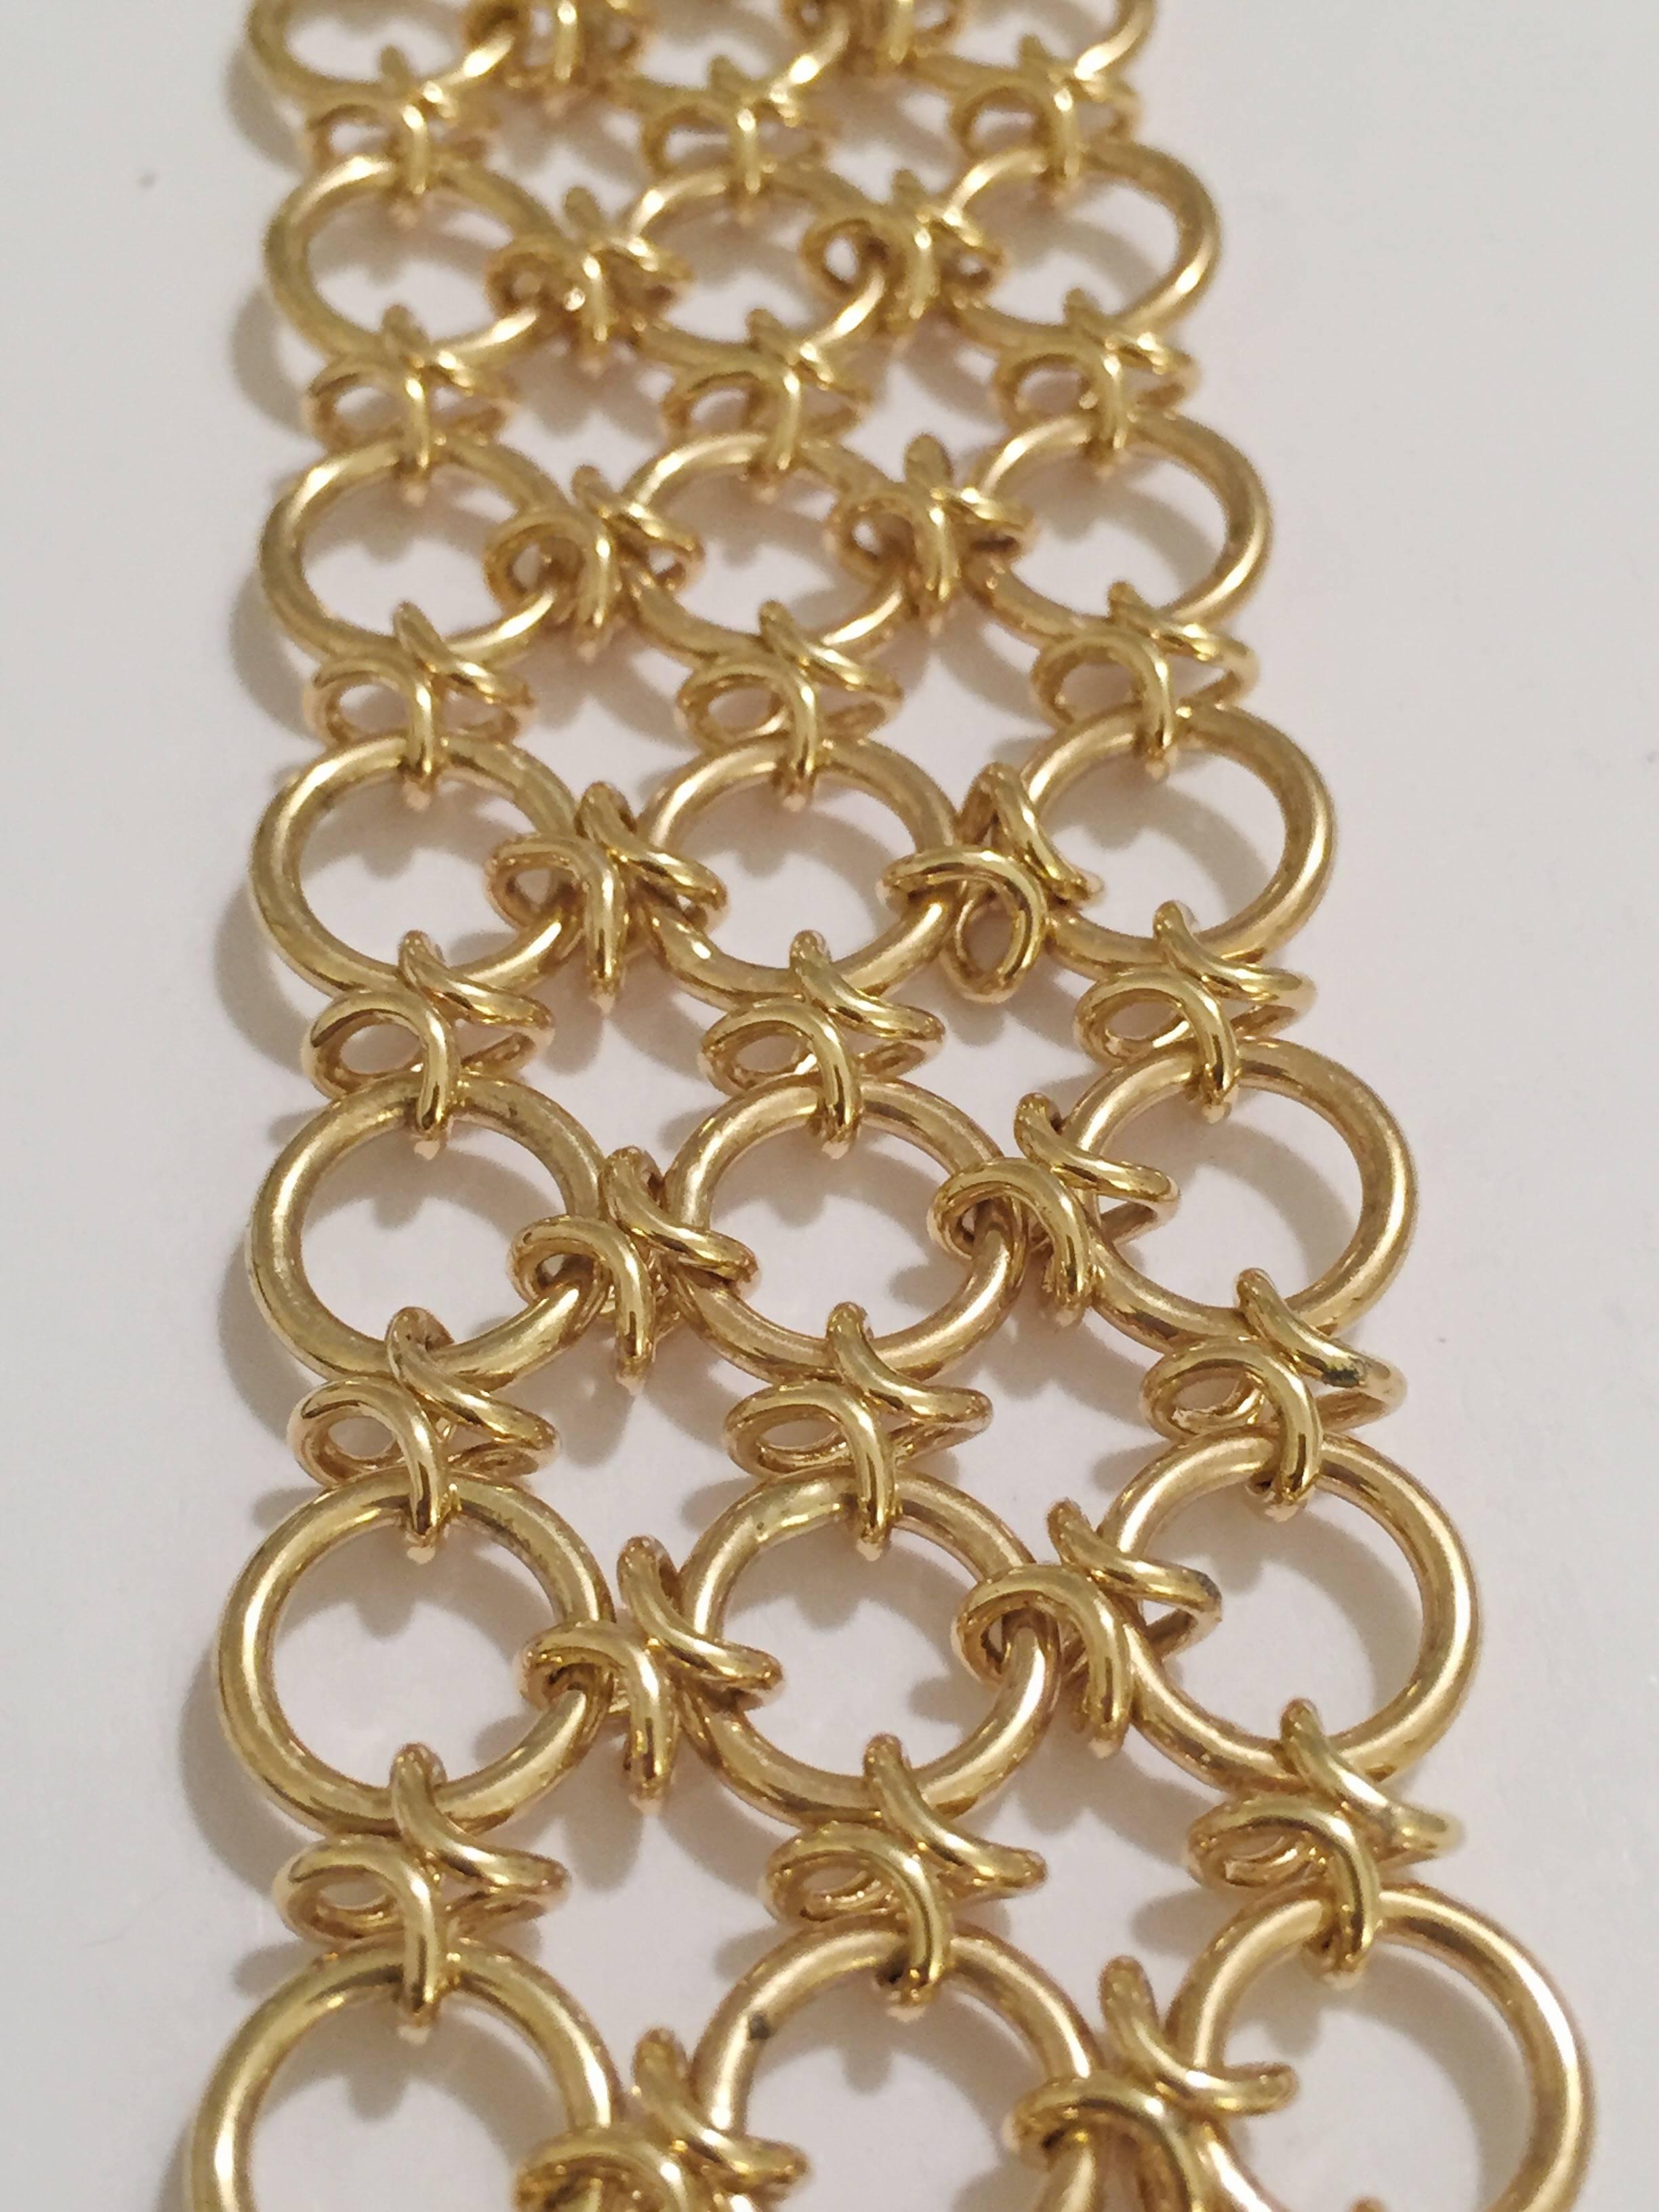 dreireihiges Armband aus 18-karätigem Gold mit kreisförmigen Goldgliedern.  Das elegante, flexible Armband ist knapp über 1,25